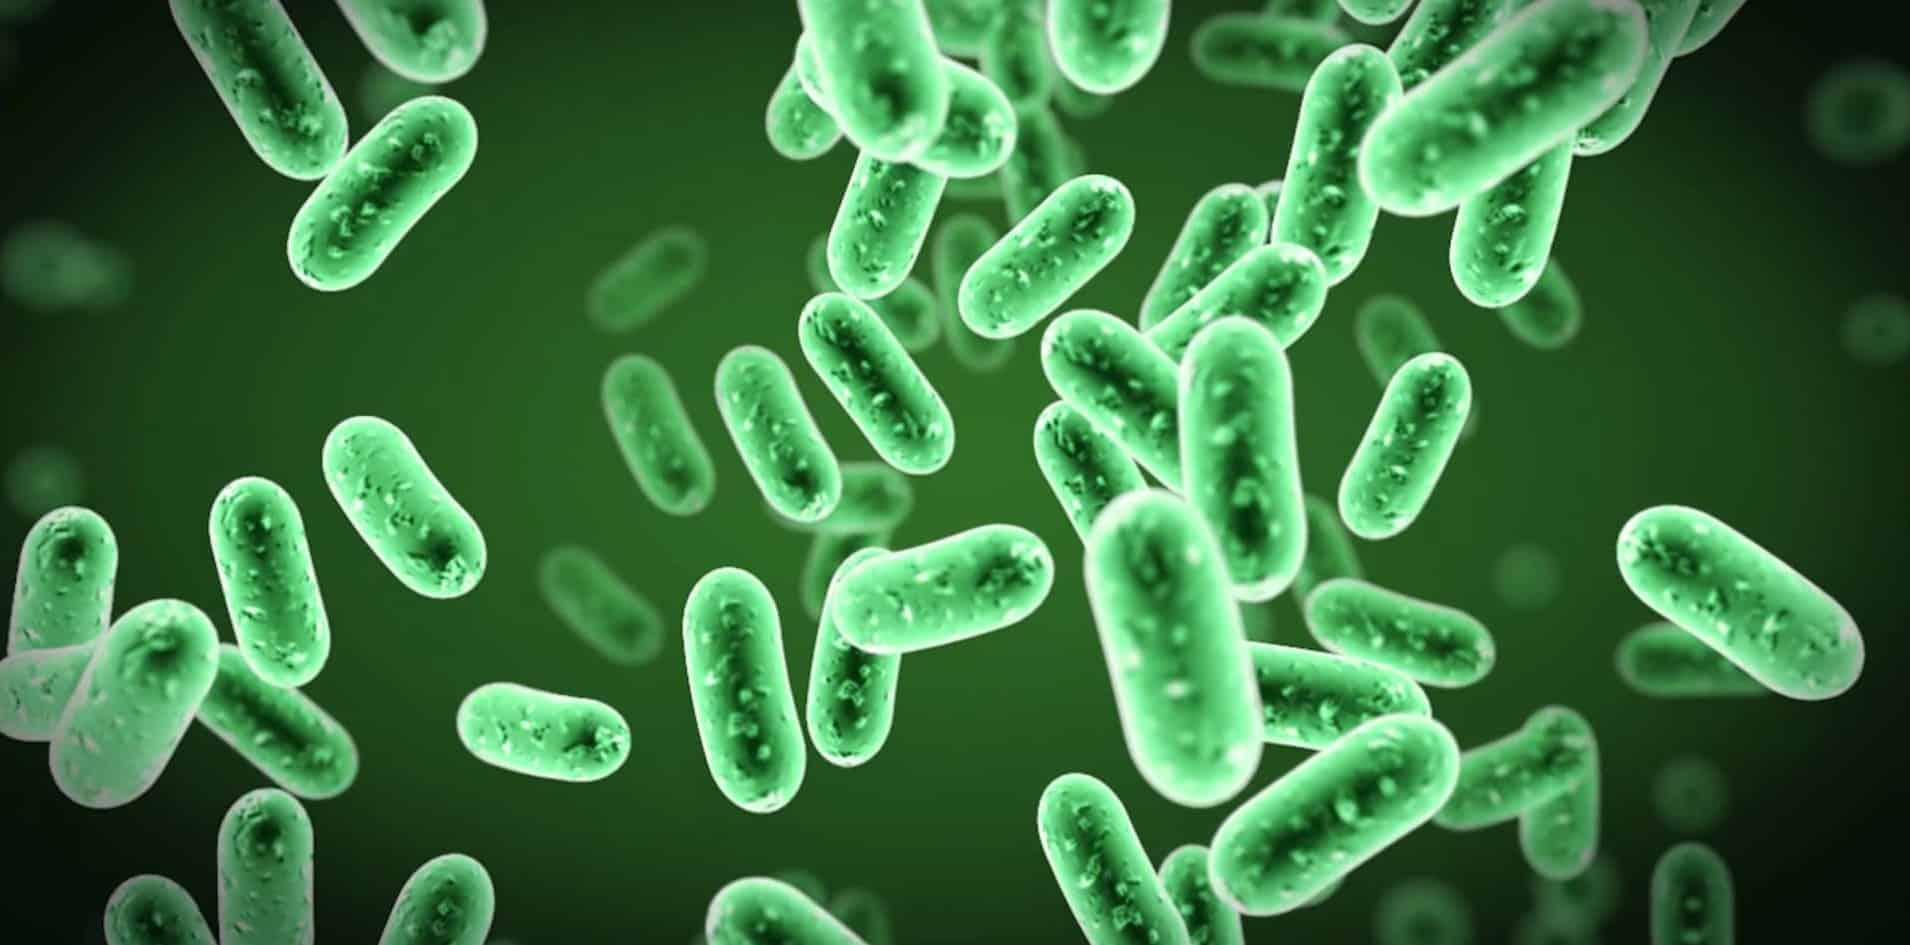 maxresdefault 2 e1464605854411 كيف نتغلب على البكتيريا؟ مجلة نقطة العلمية